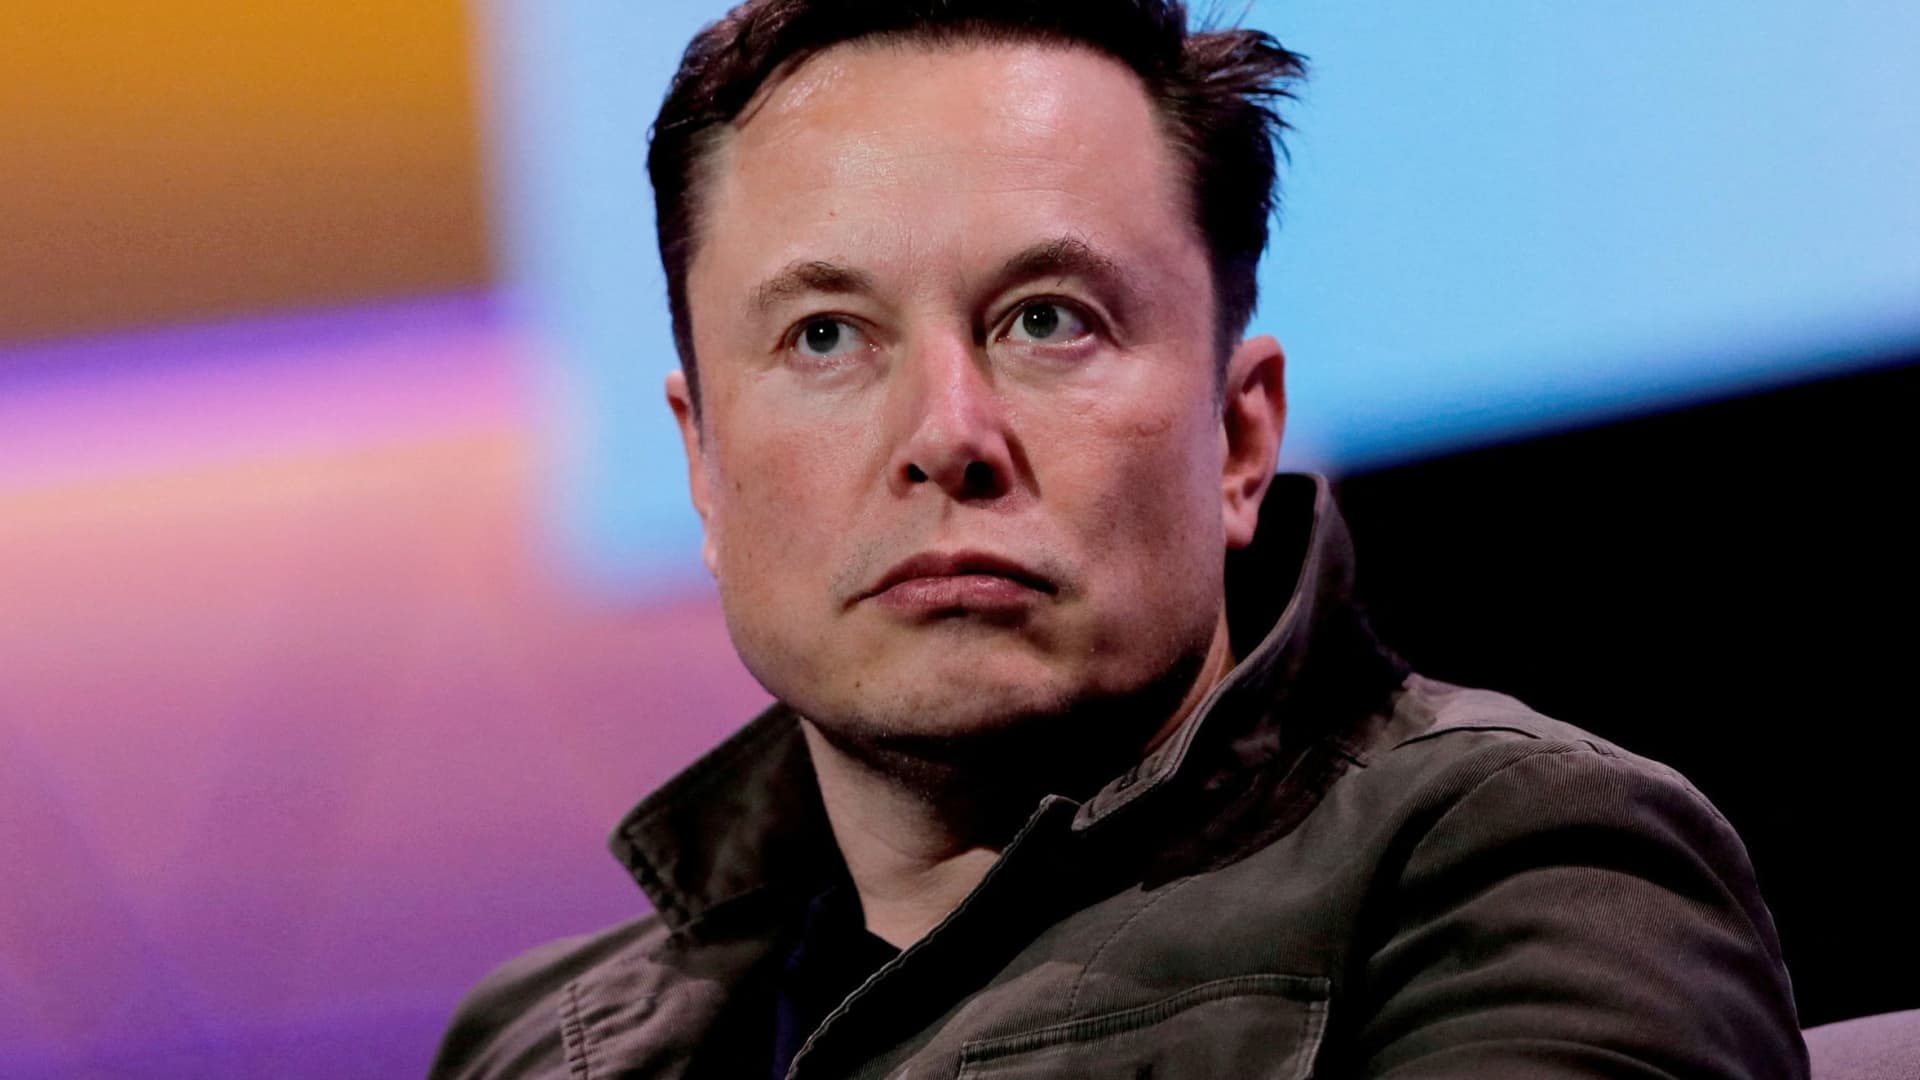 Lastnik SpaceX in izvršni direktor Tesle Elon Musk govori med pogovorom z legendarnim oblikovalcem iger Toddom Howardom (brez slike) na konvenciji o igrah E3 v Los Angelesu v Kaliforniji 13. junija 2019.